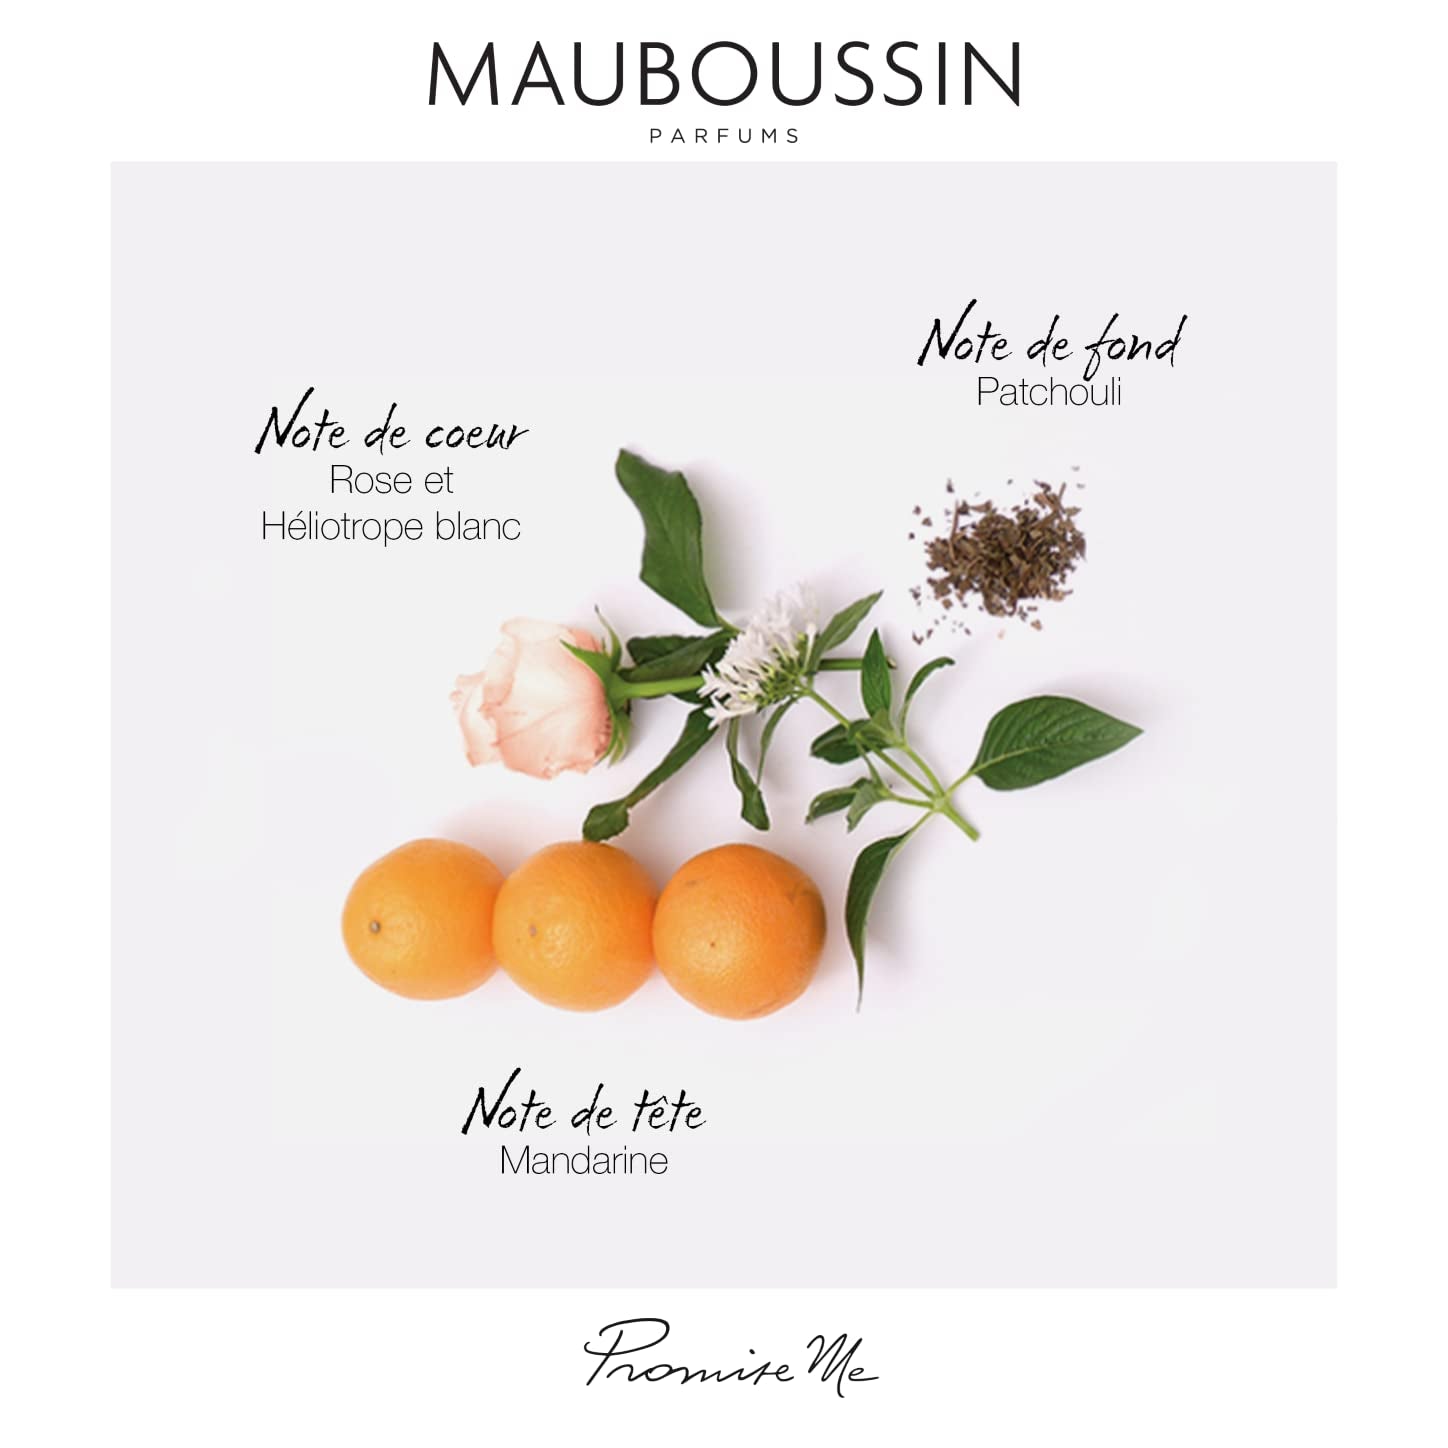 Mauboussin - Prestige 2022 Promise Me Set: Eau de Parfum 90 ml, Precious Shower 100 ml, Scented Milk 100 ml & Toiletry Bag